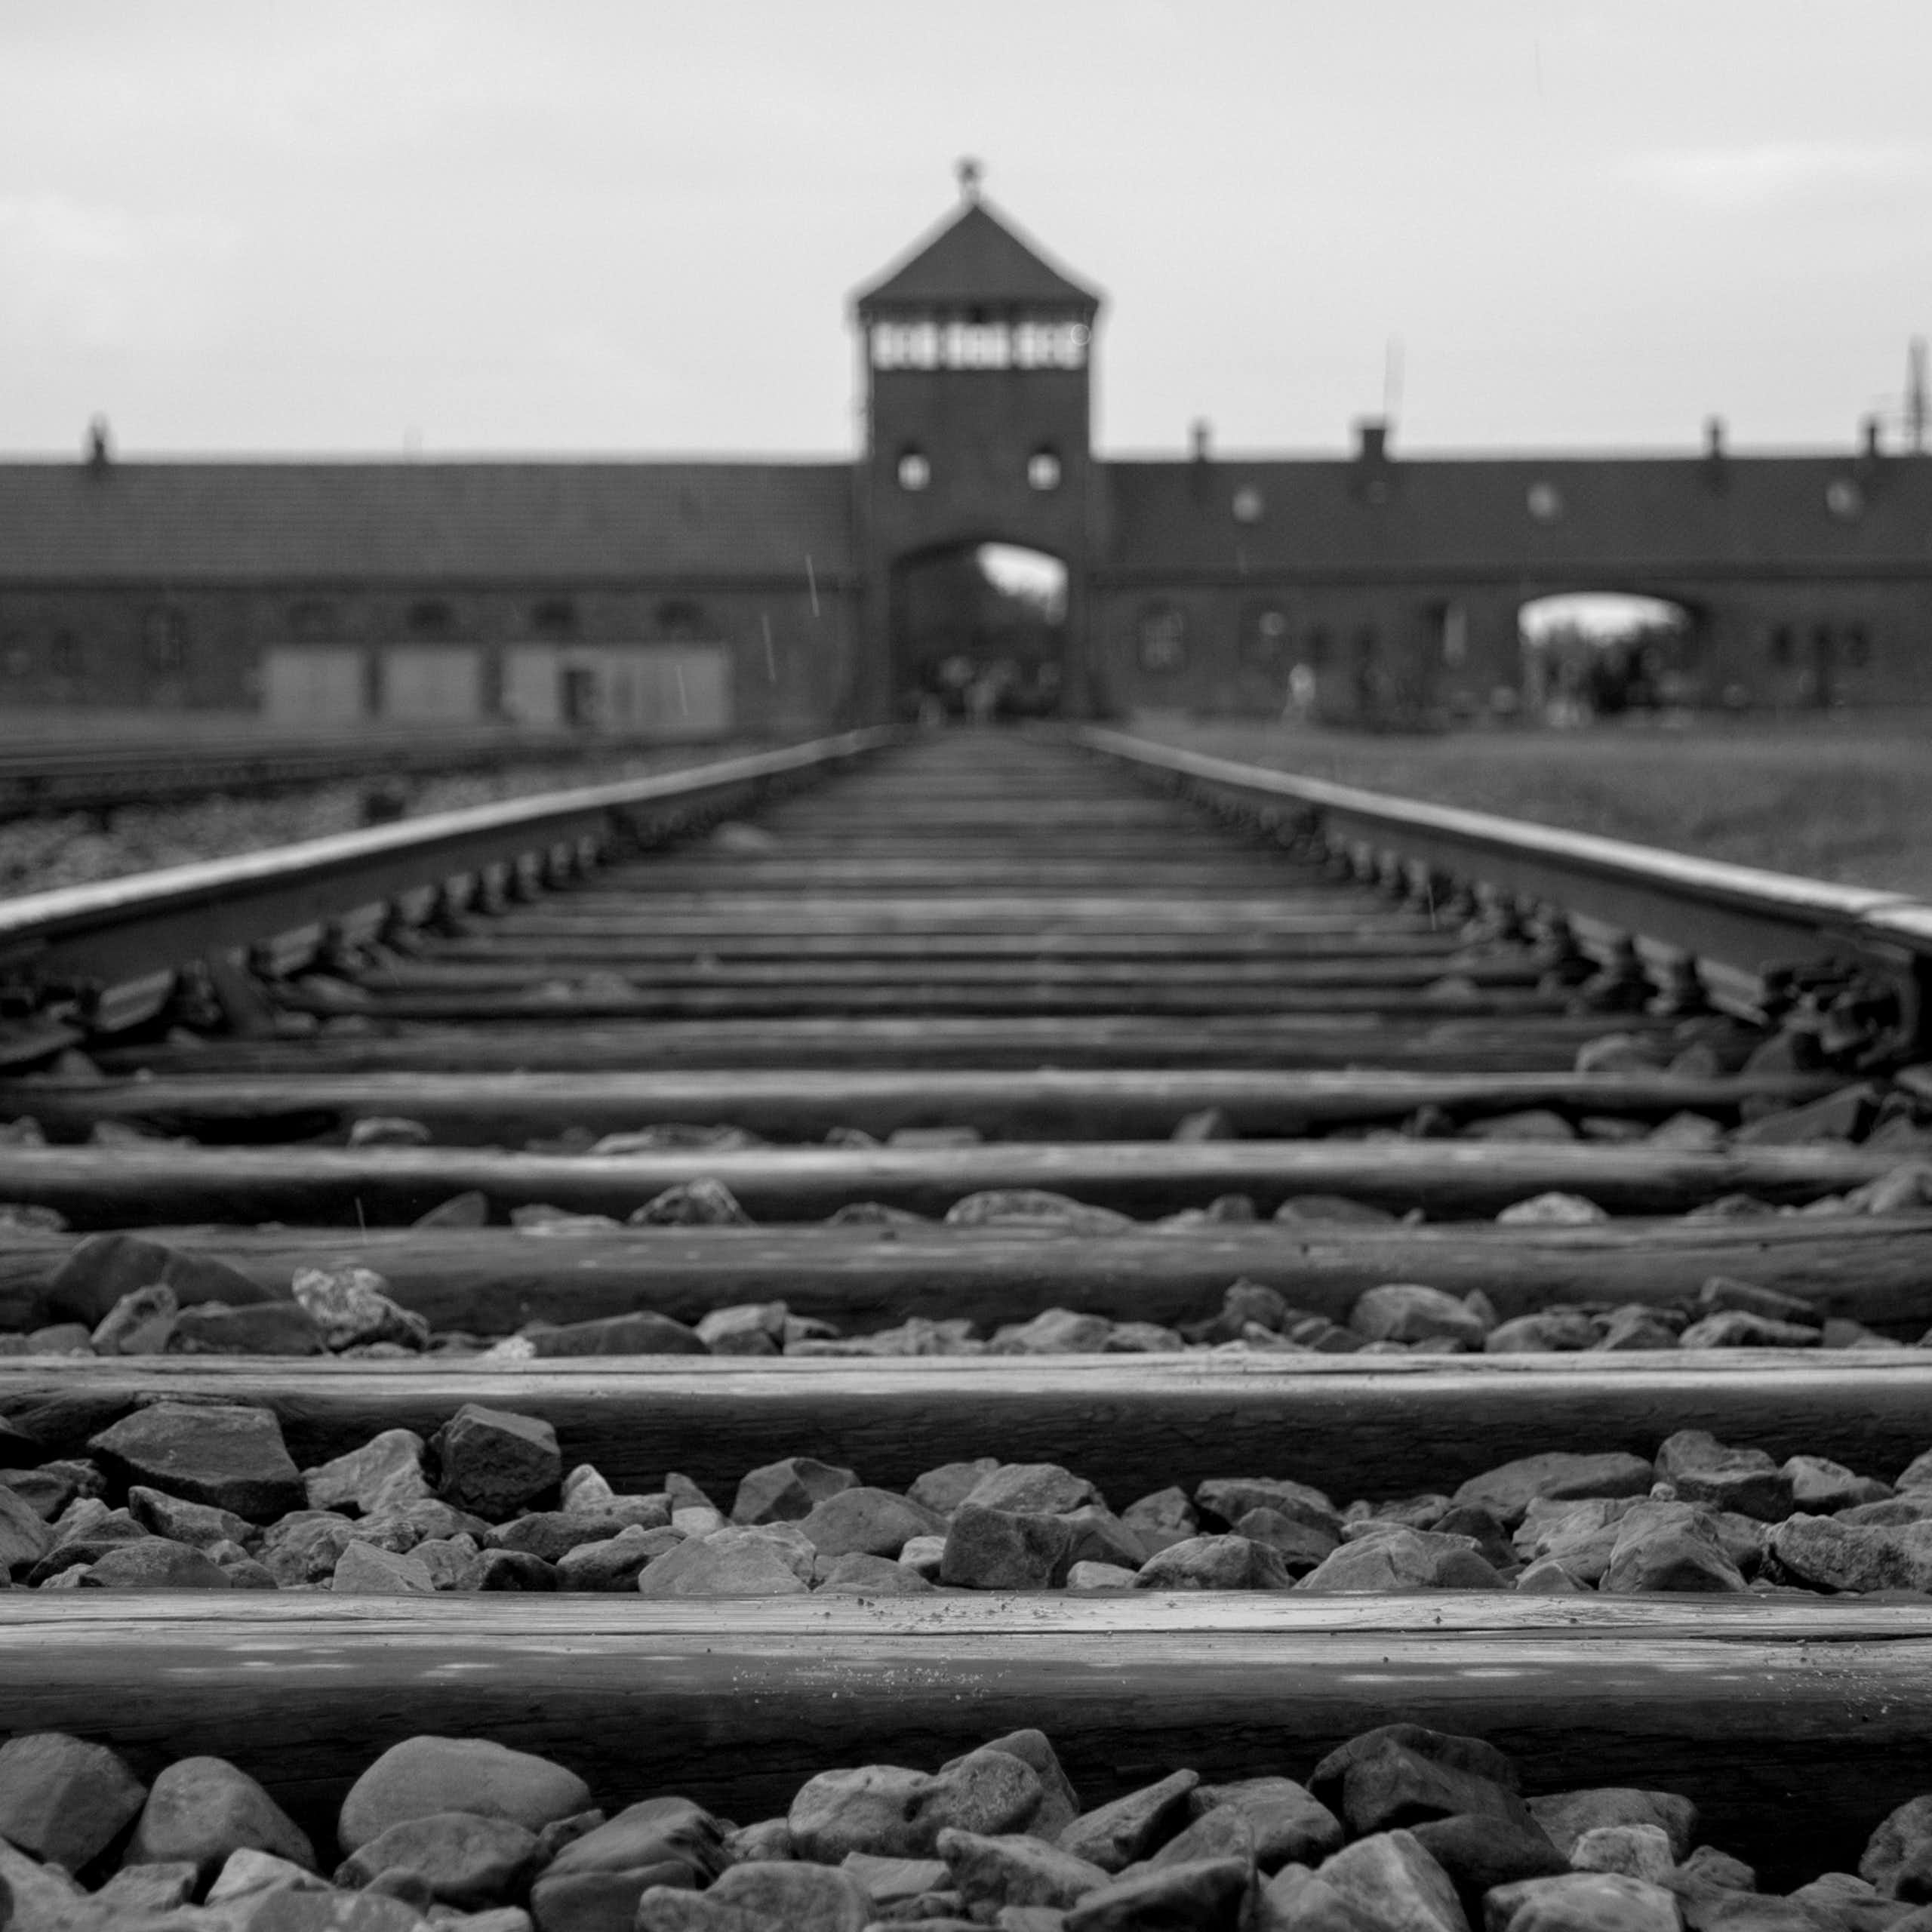 Train tracks to Auschwitz